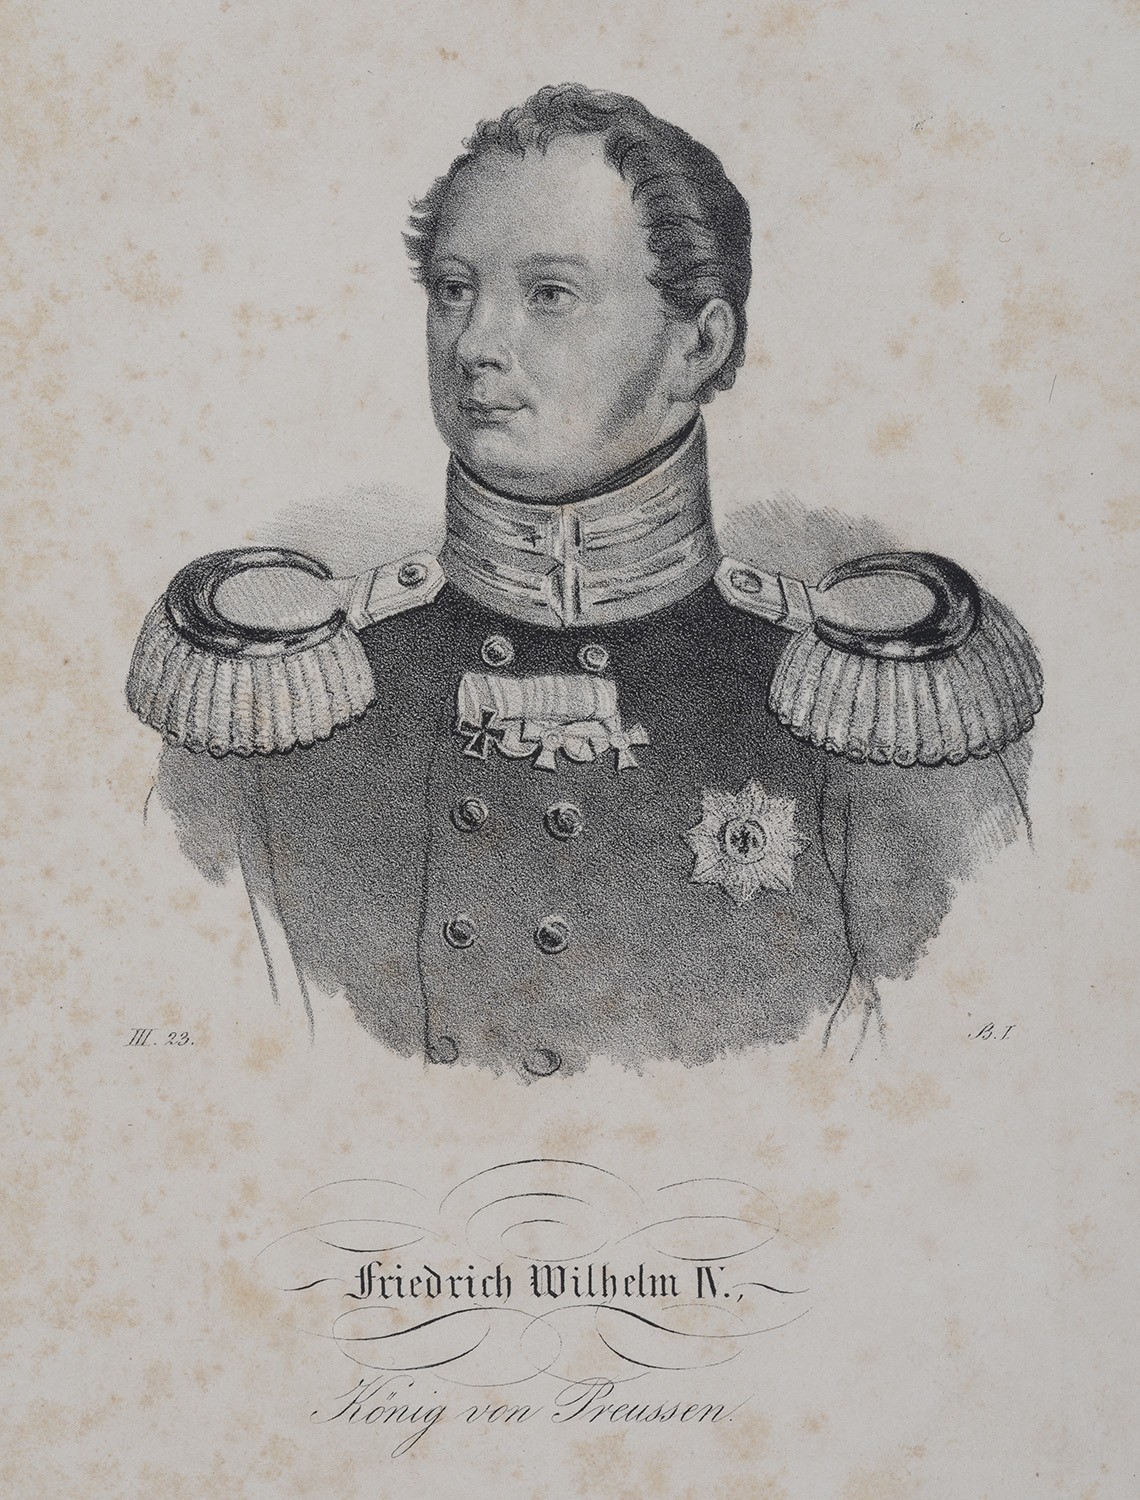 Friedrich Wilhelm IV., König von Preußen (1795-1861, reg. 1840-1858/61) (Landesgeschichtliche Vereinigung für die Mark Brandenburg e.V., Archiv CC BY)